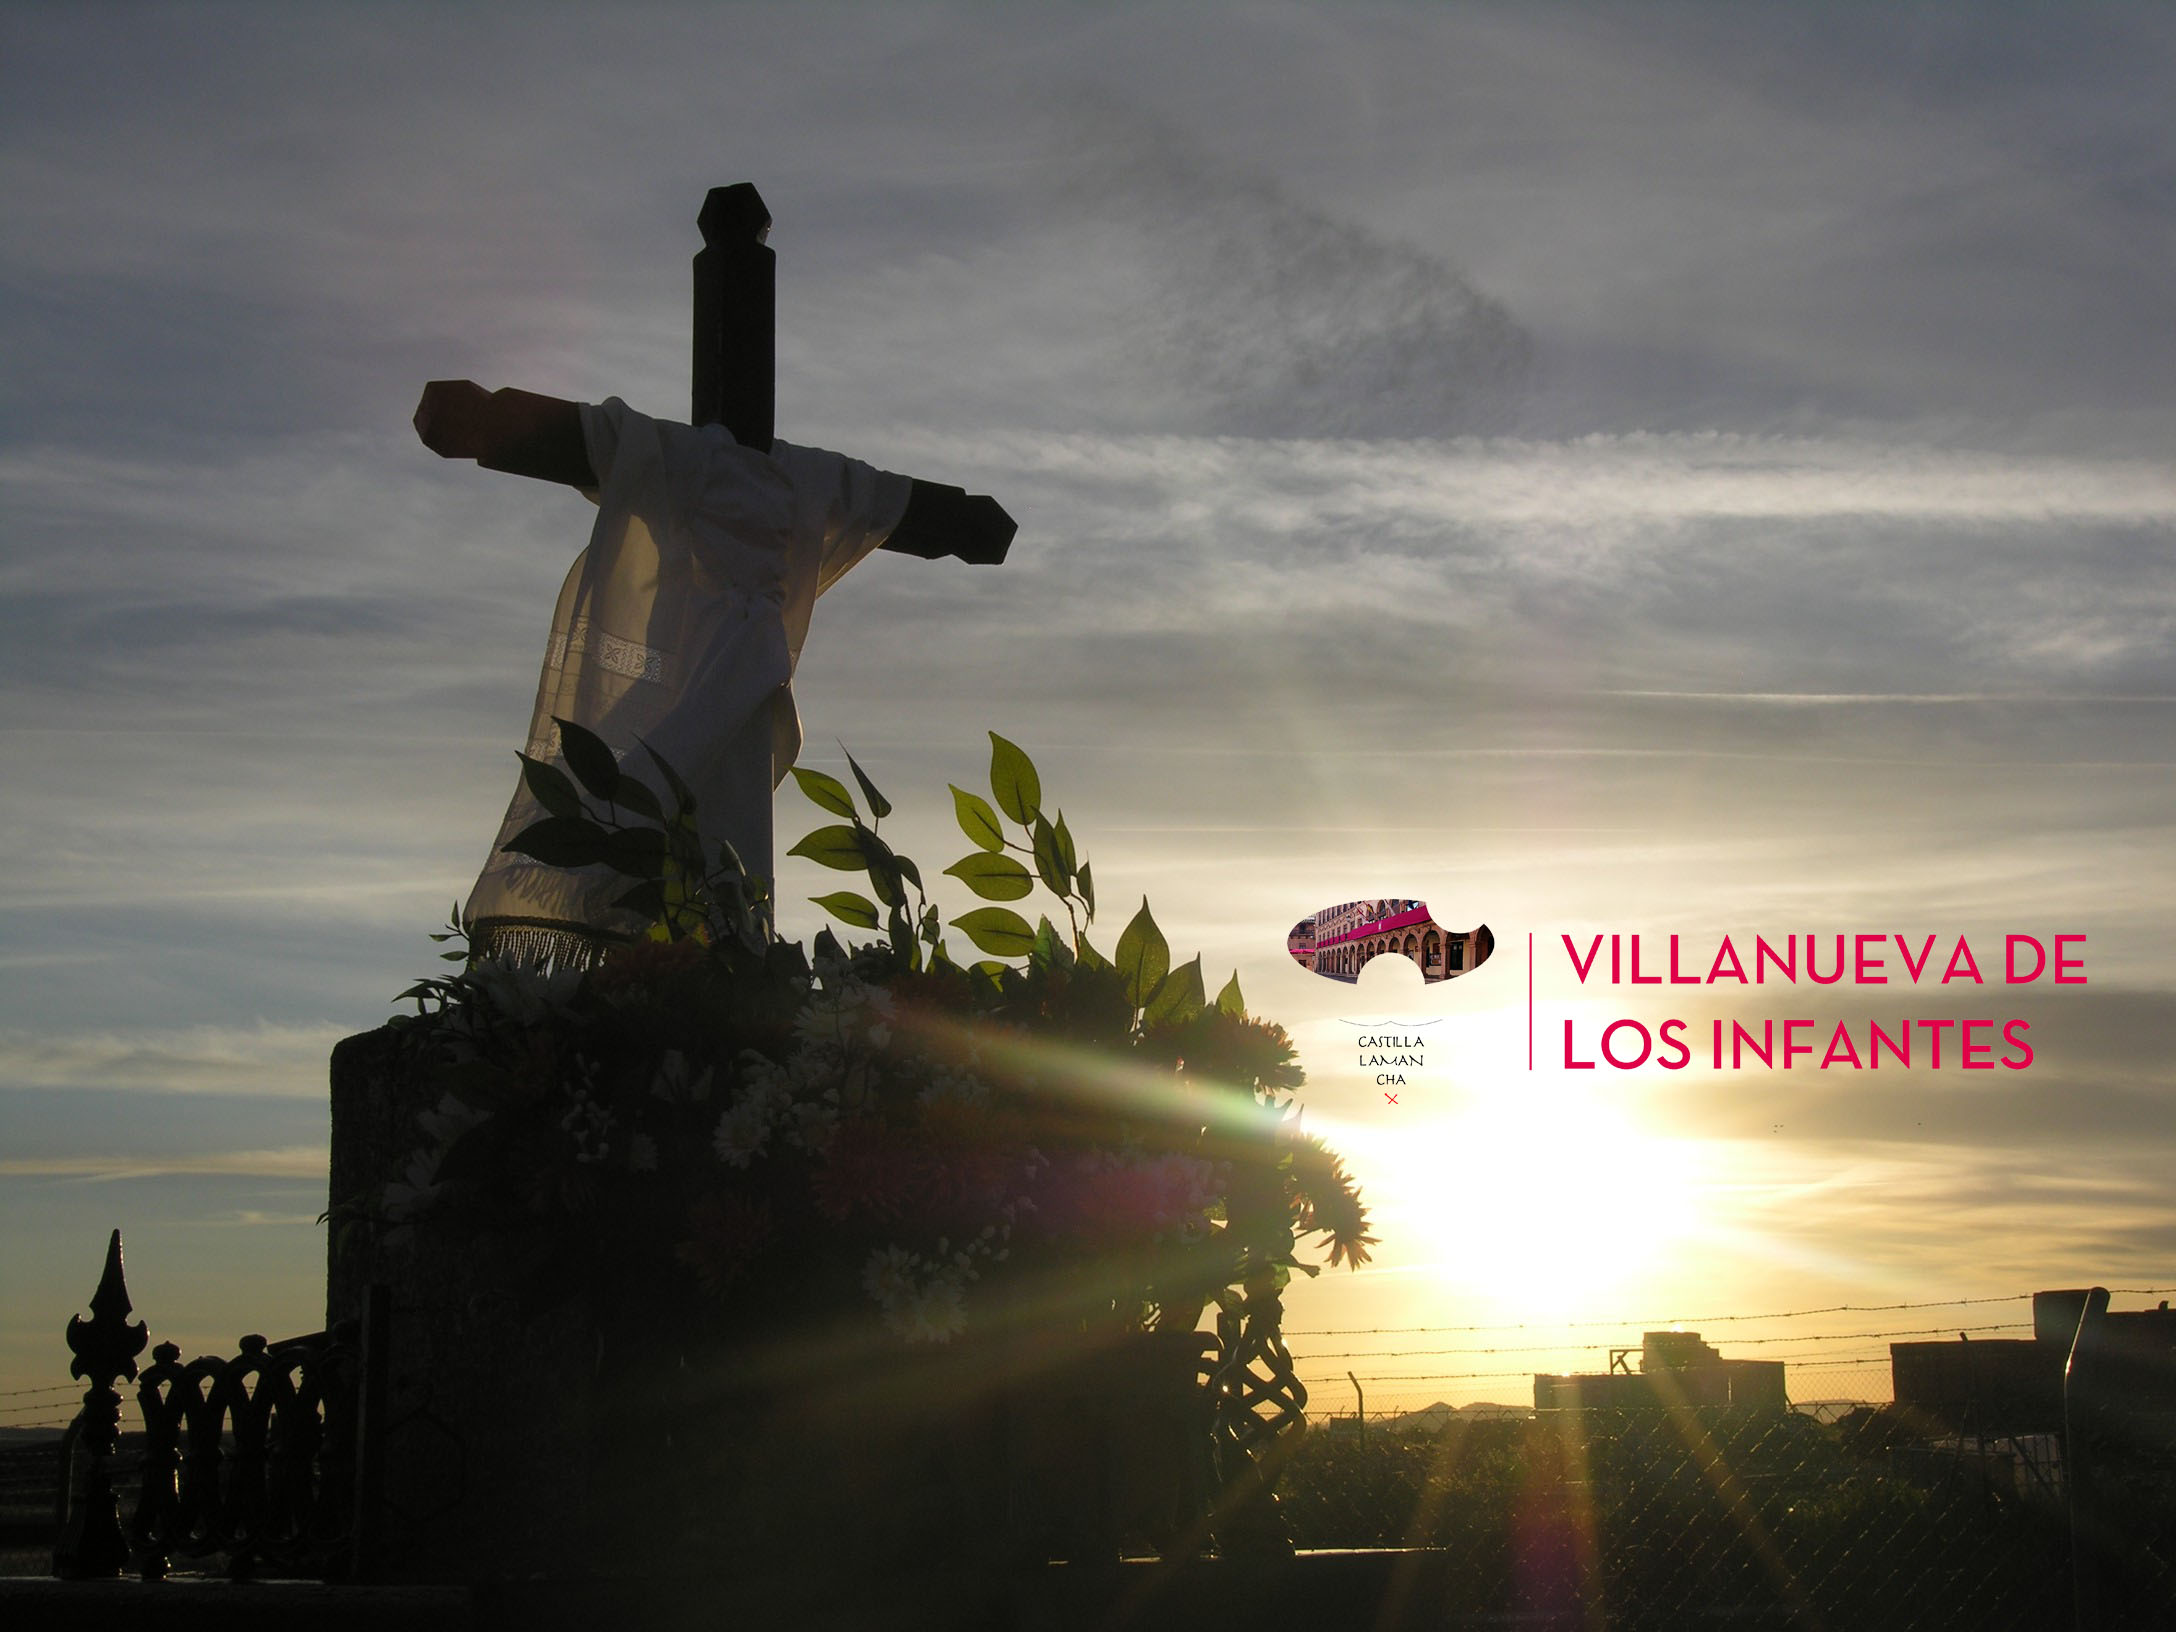 La Universidad Popular de Villanueva de los Infantes organiza una Exposición de Fotografía sobre la Fiesta de Cruces y Mayos